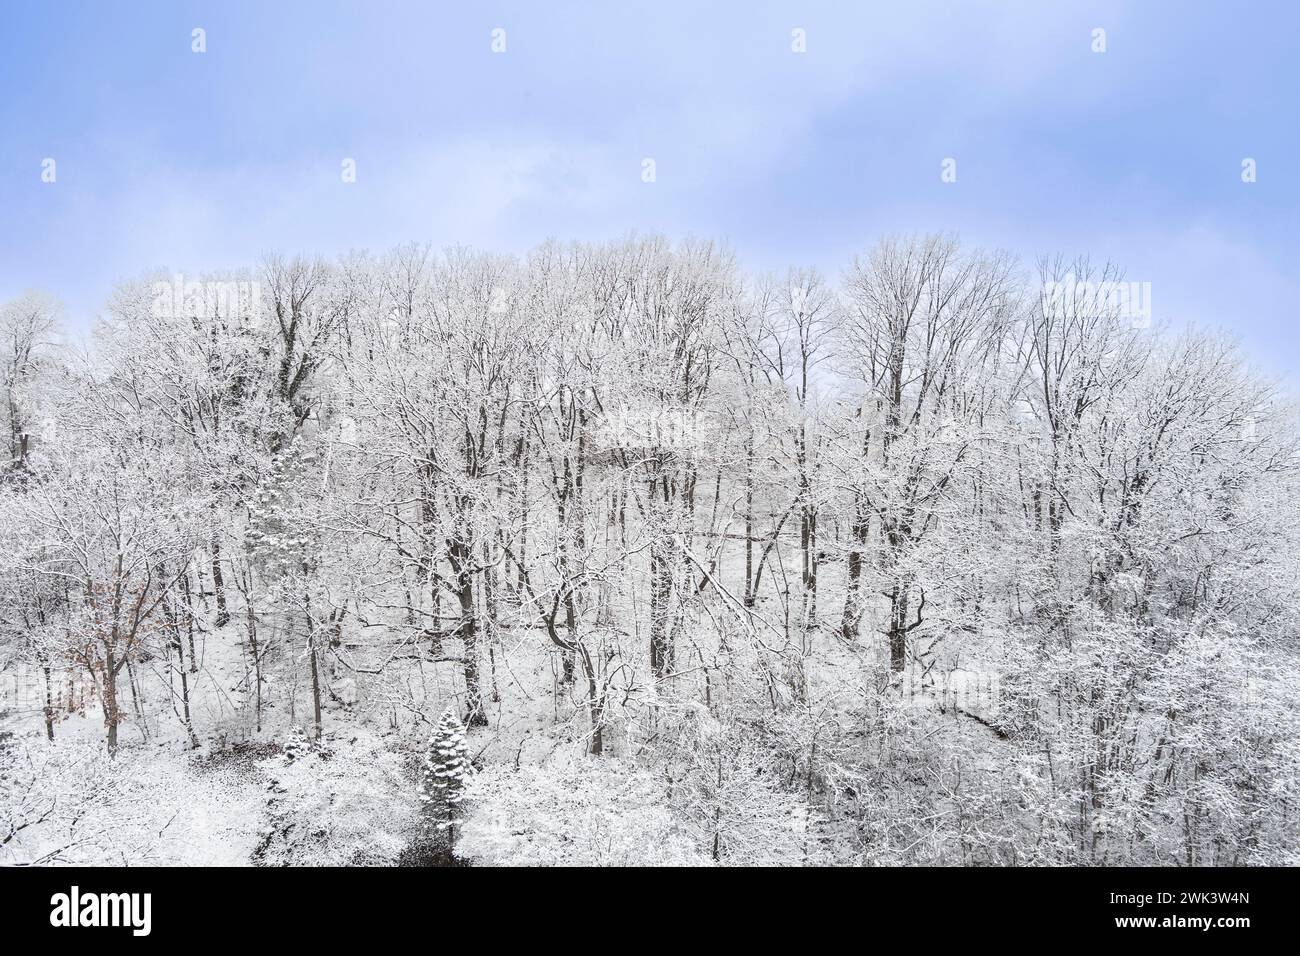 Vue aérienne de la colline avec des arbres couverts de neige en hiver, Pennsylvanie, États-Unis Banque D'Images